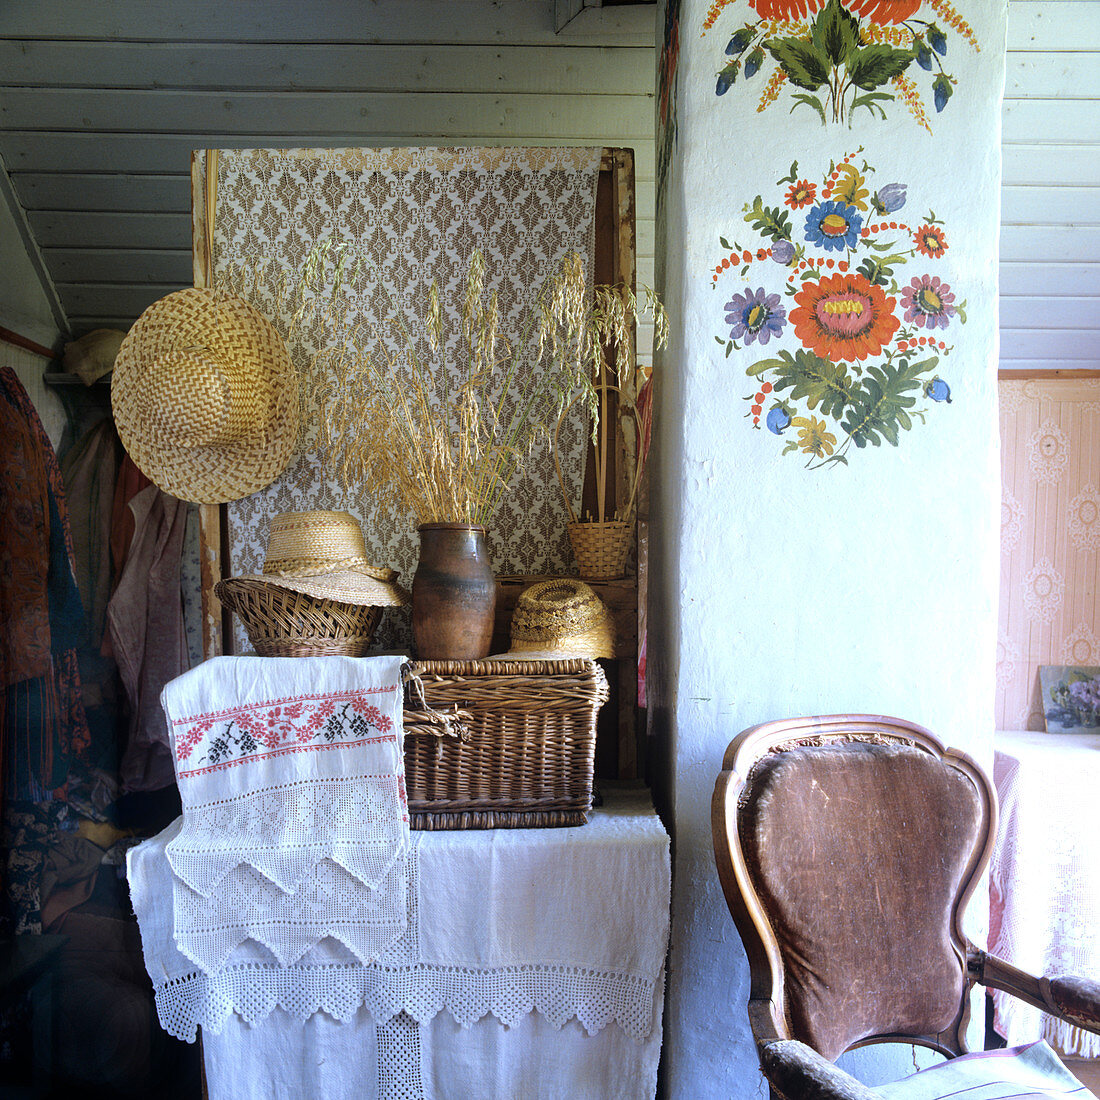 Ablage mit bestickter Leinenwäsche, Körben und Strohhüten; auf der Schornsteinsäule fröhliche Wandmalereien mit einfachen Blumenmotiven im bäuerlichen Stil